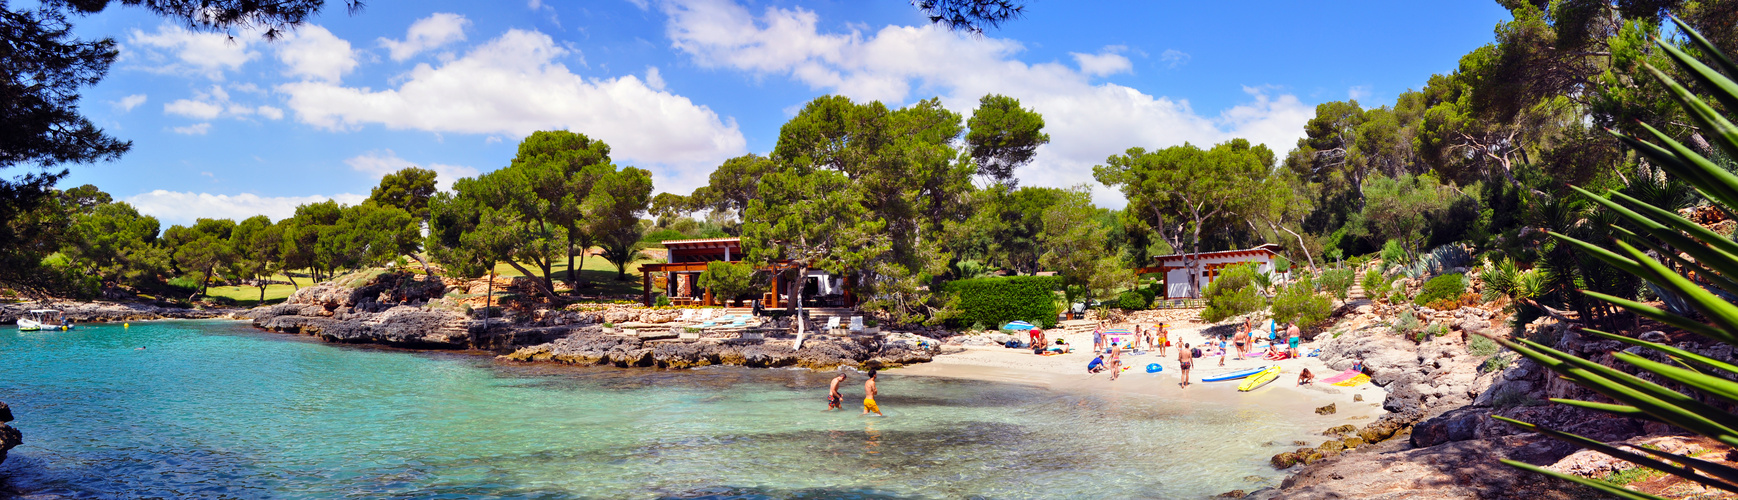 Kleine Bucht Mallorca